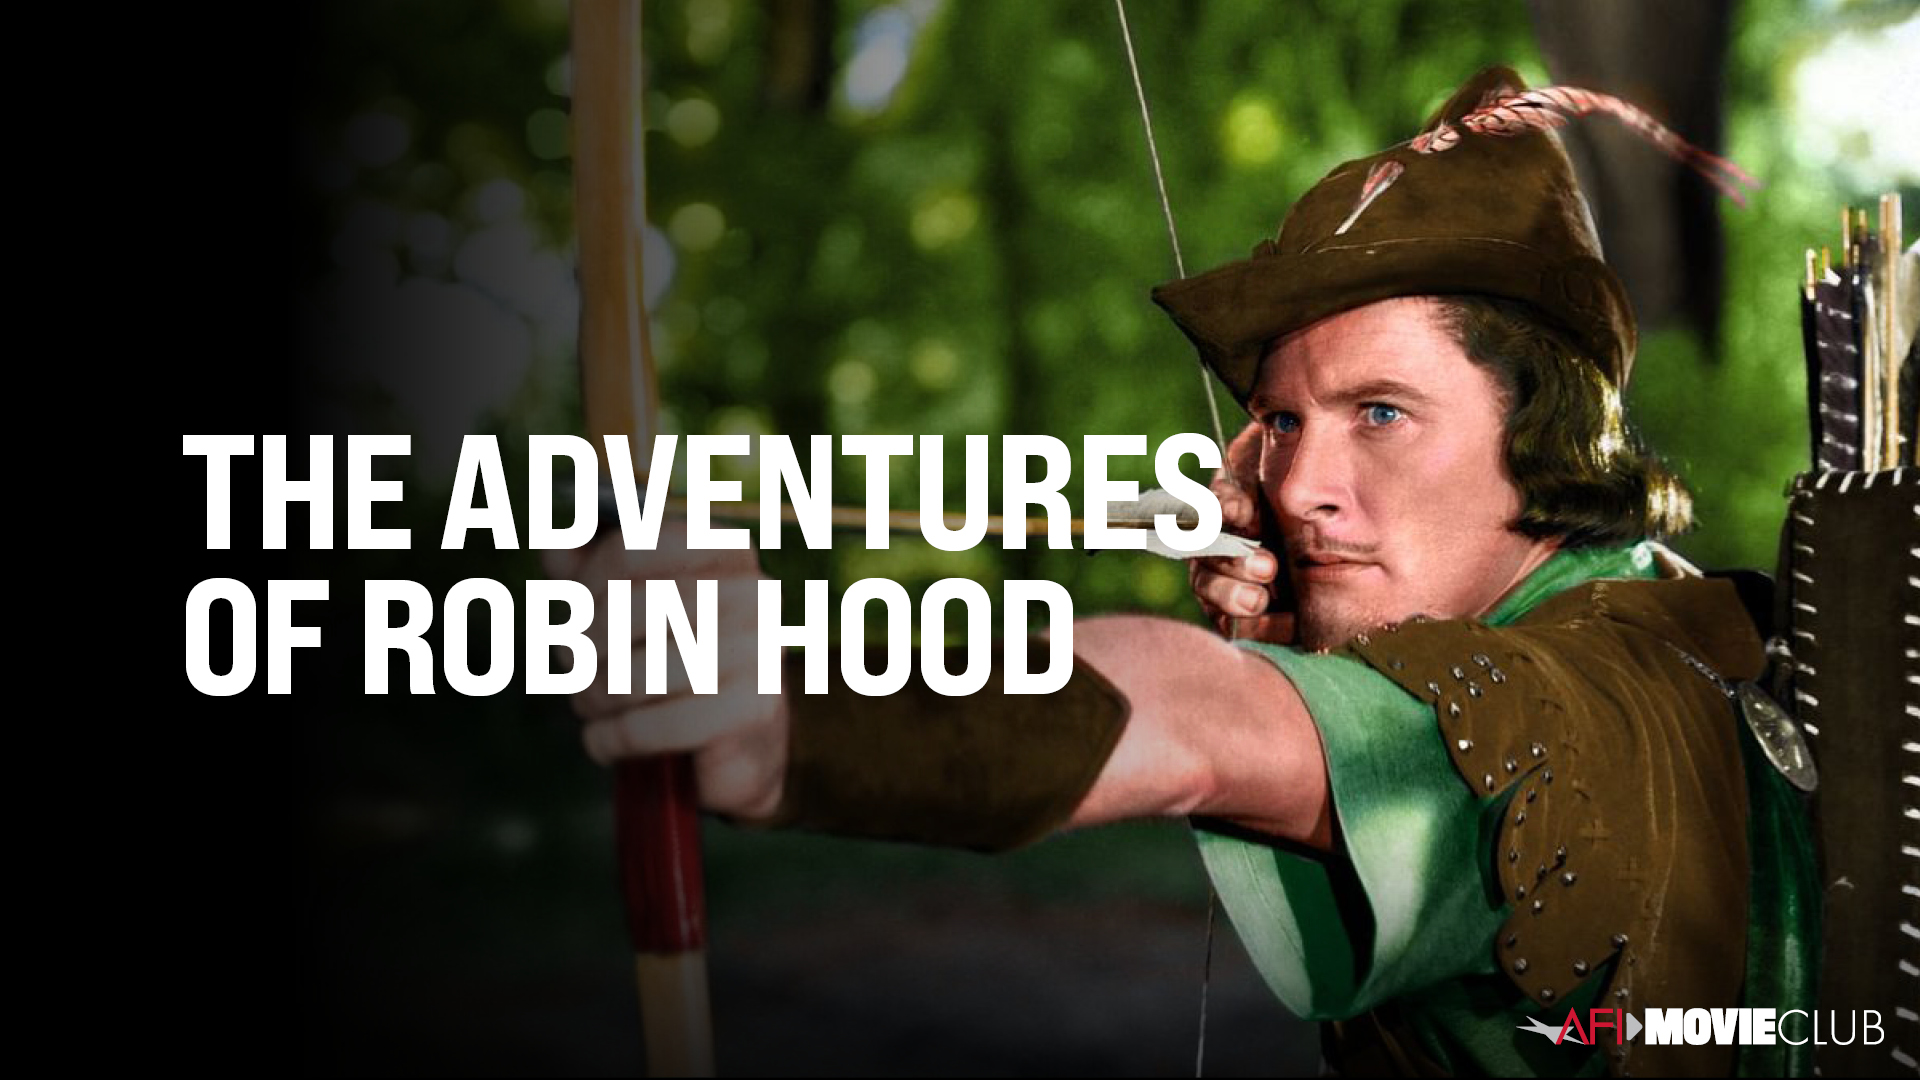 The Adventures of Robin Hood - Errol Flynn